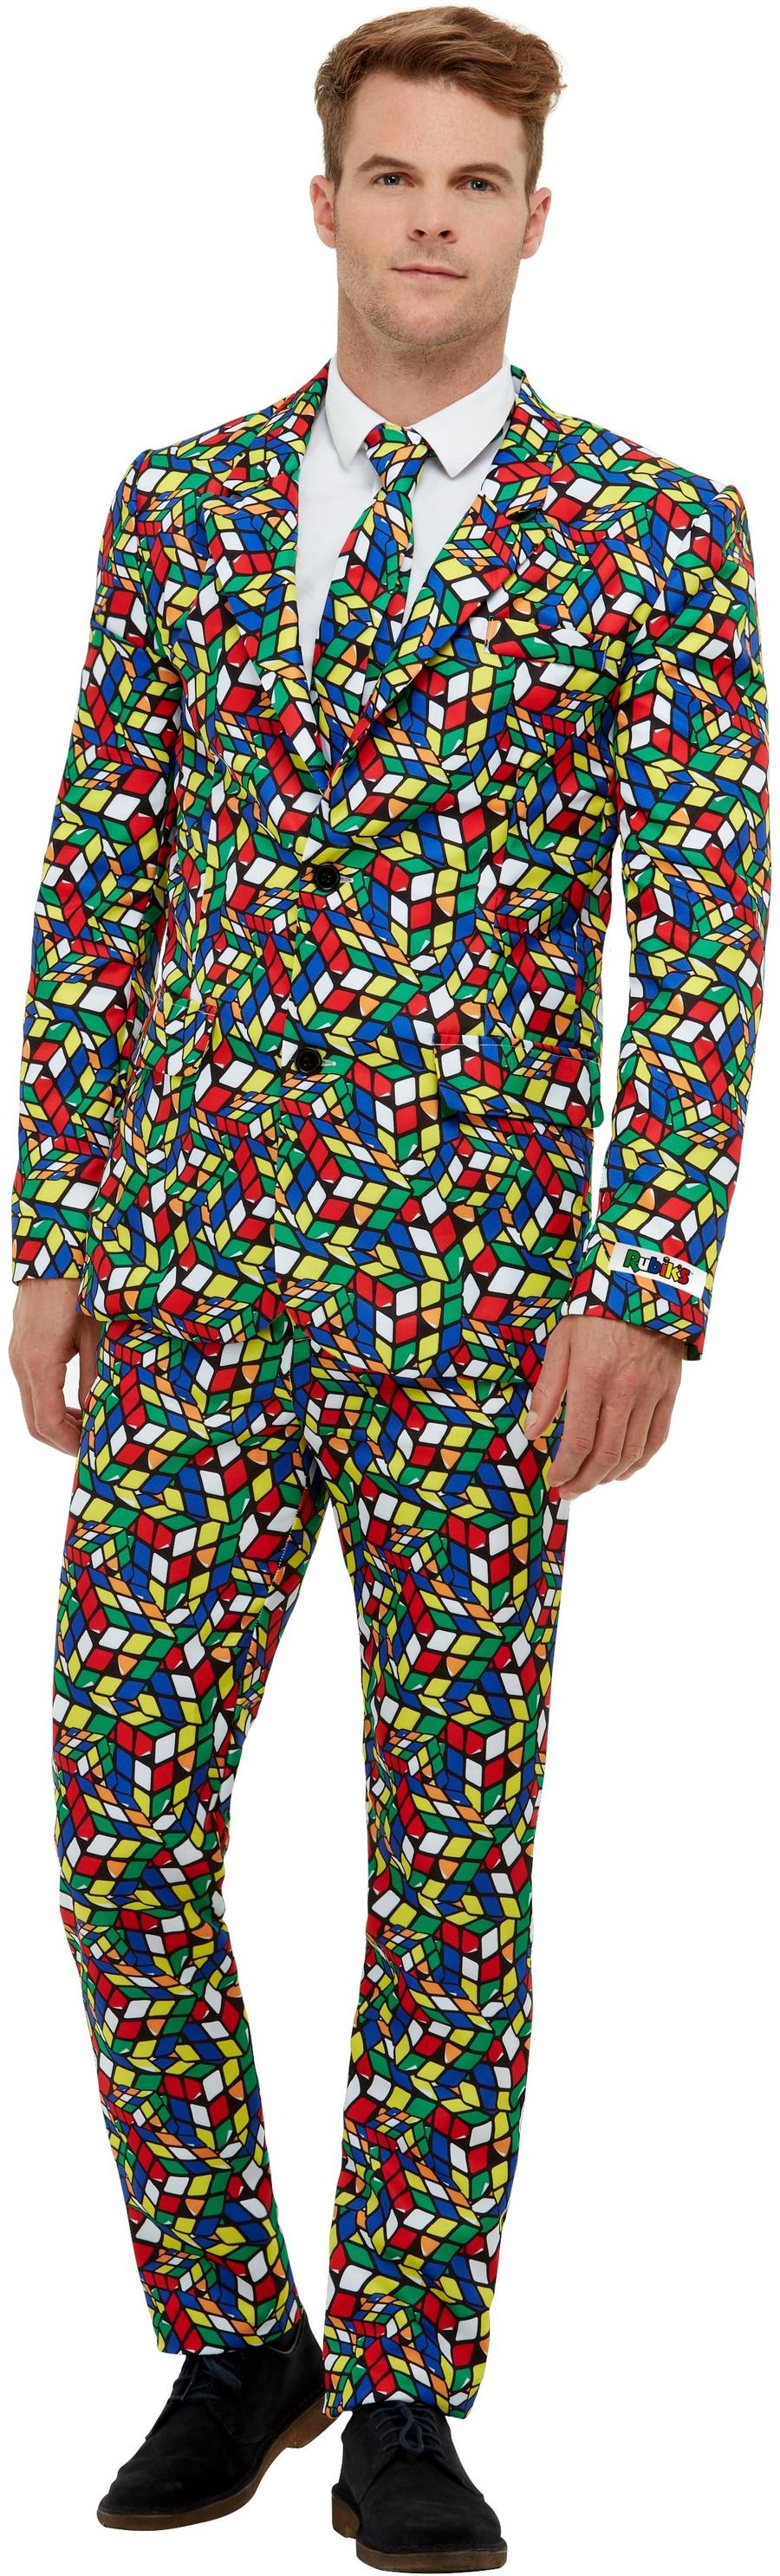 Rubiks Cube Suit